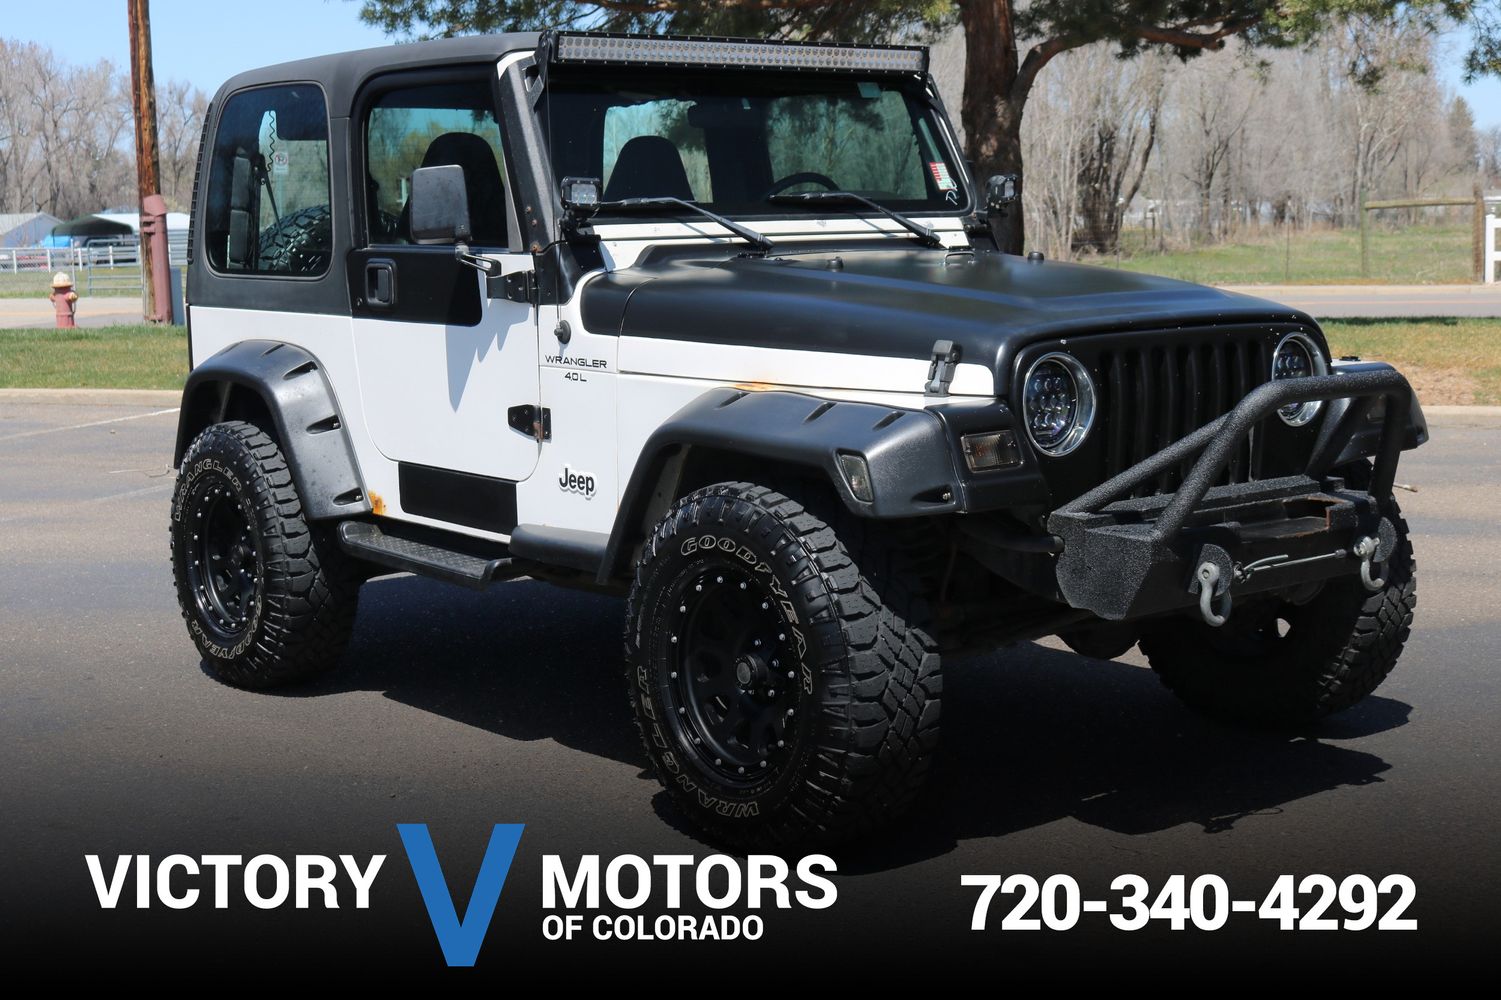 1998 Jeep Wrangler Sport | Victory Motors of Colorado